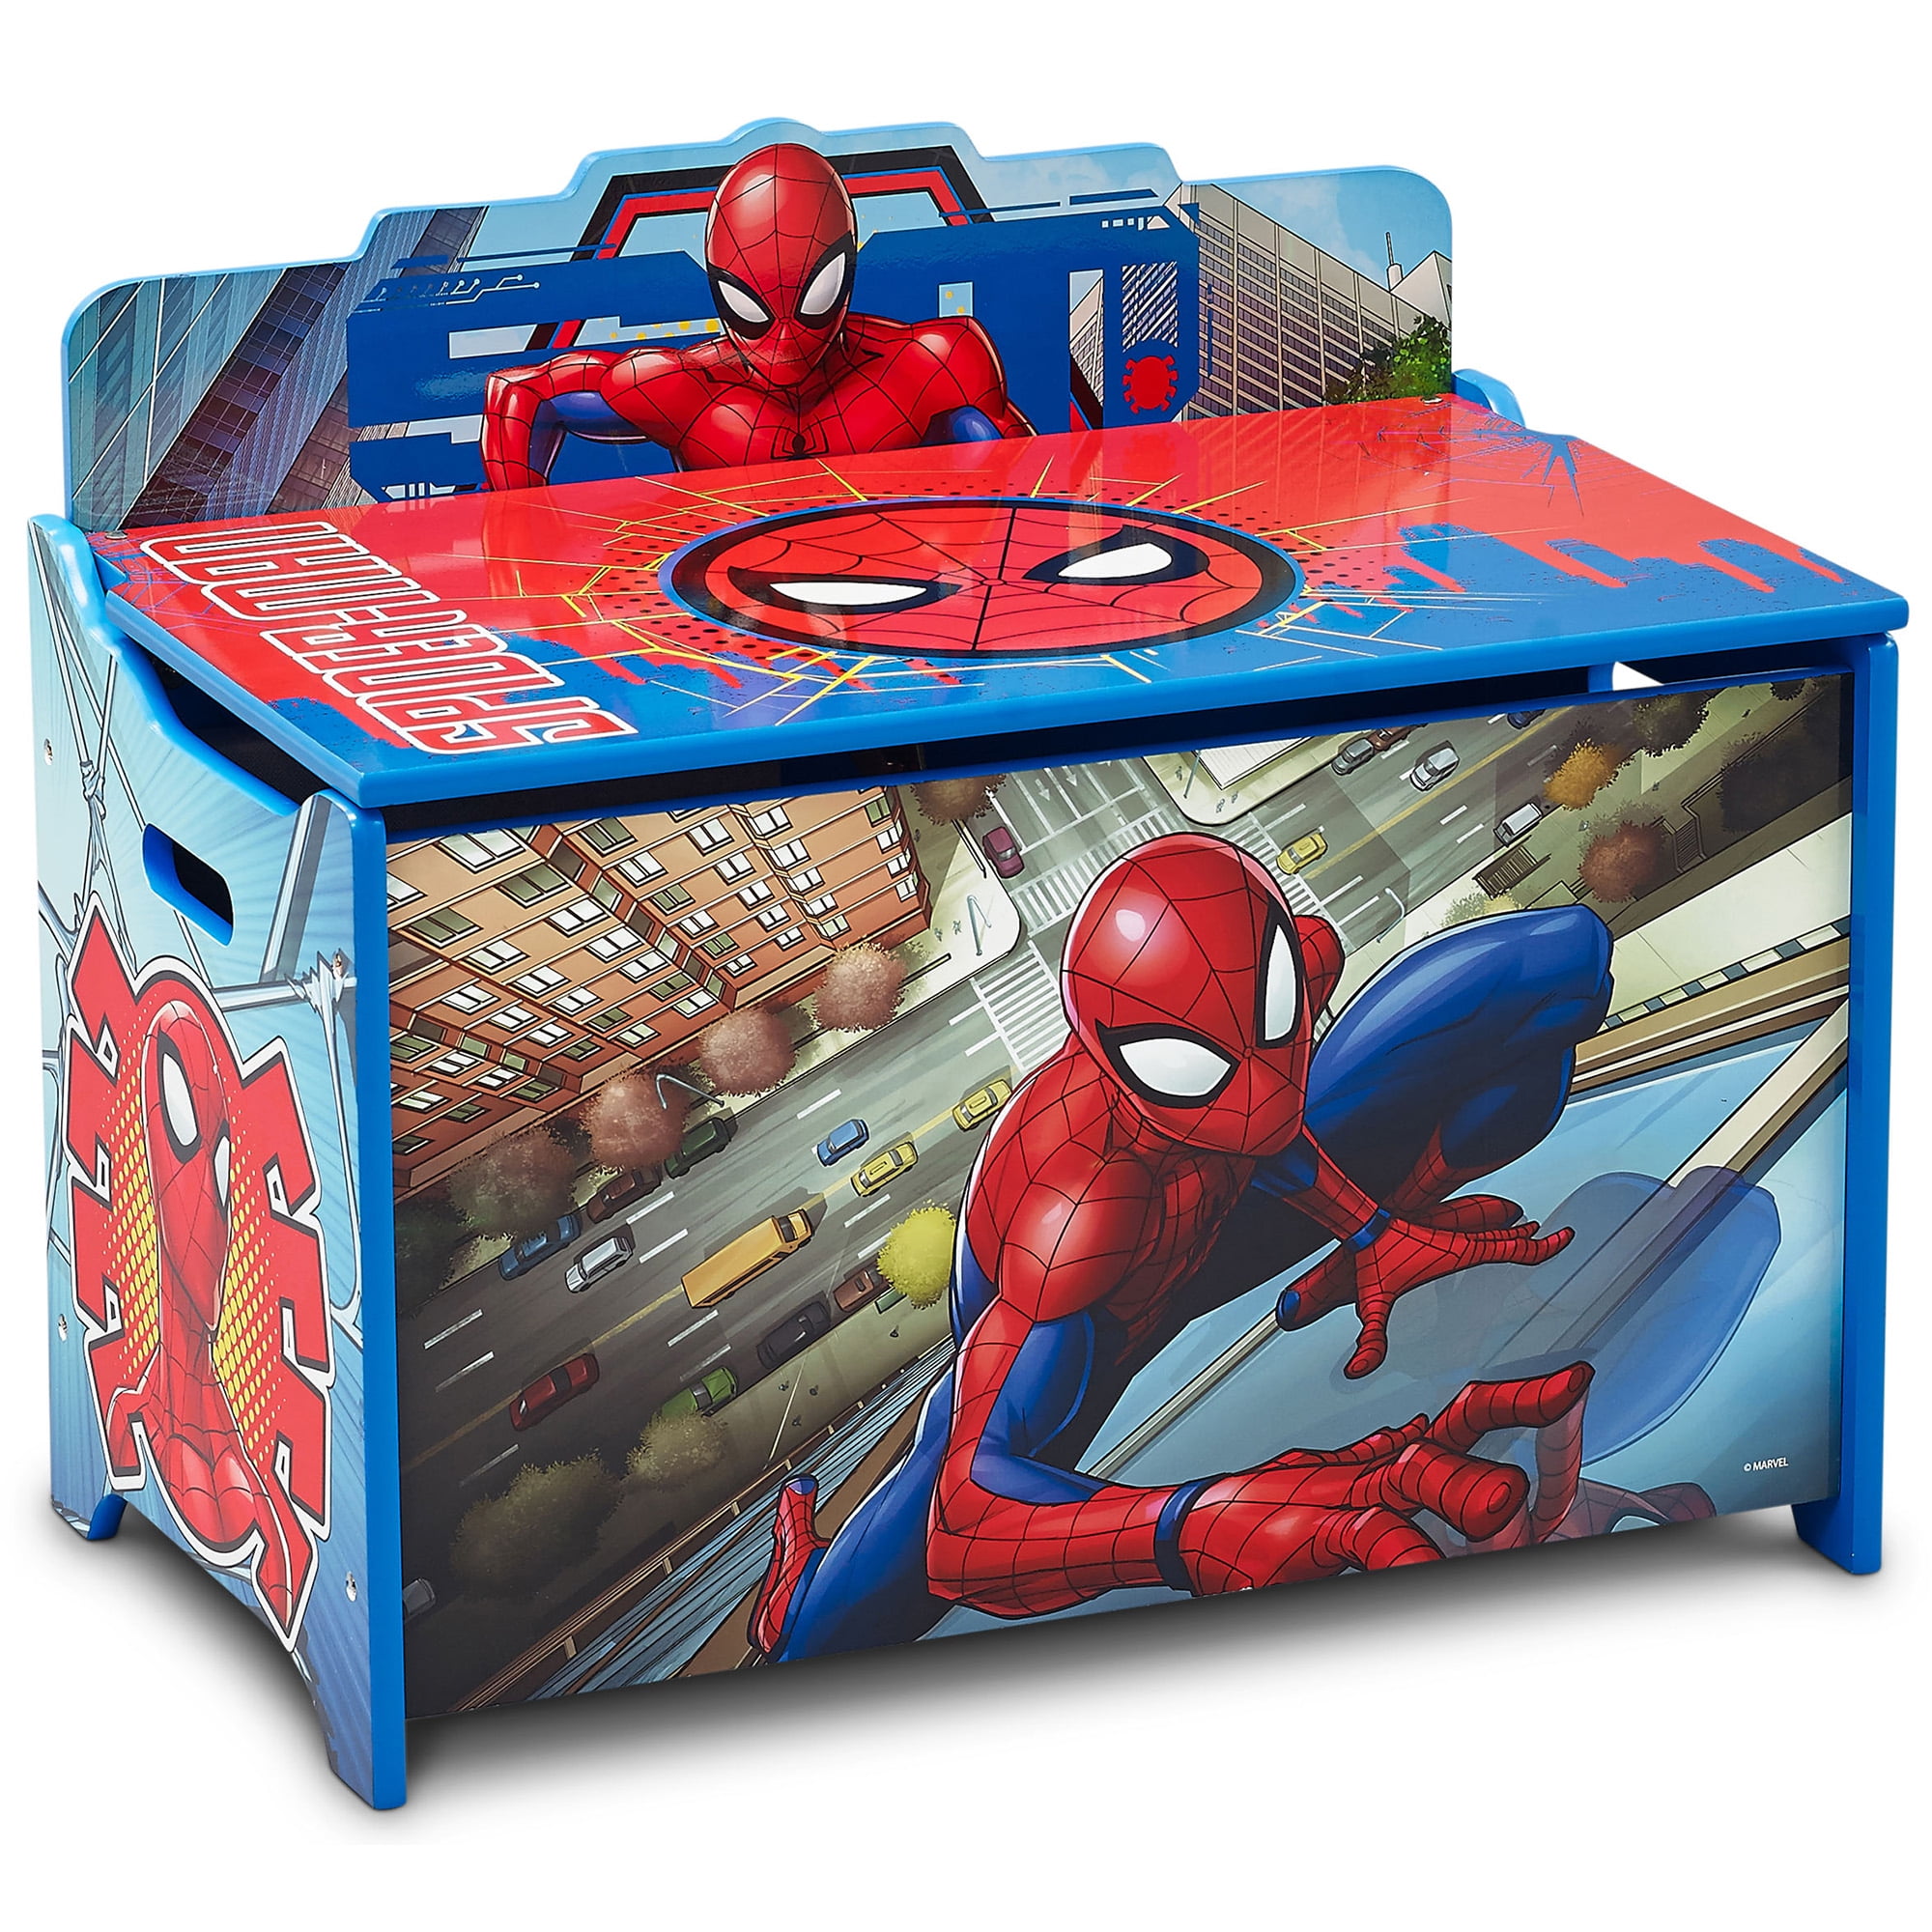 Marvel SpiderMan Deluxe Toy Box by Delta Children